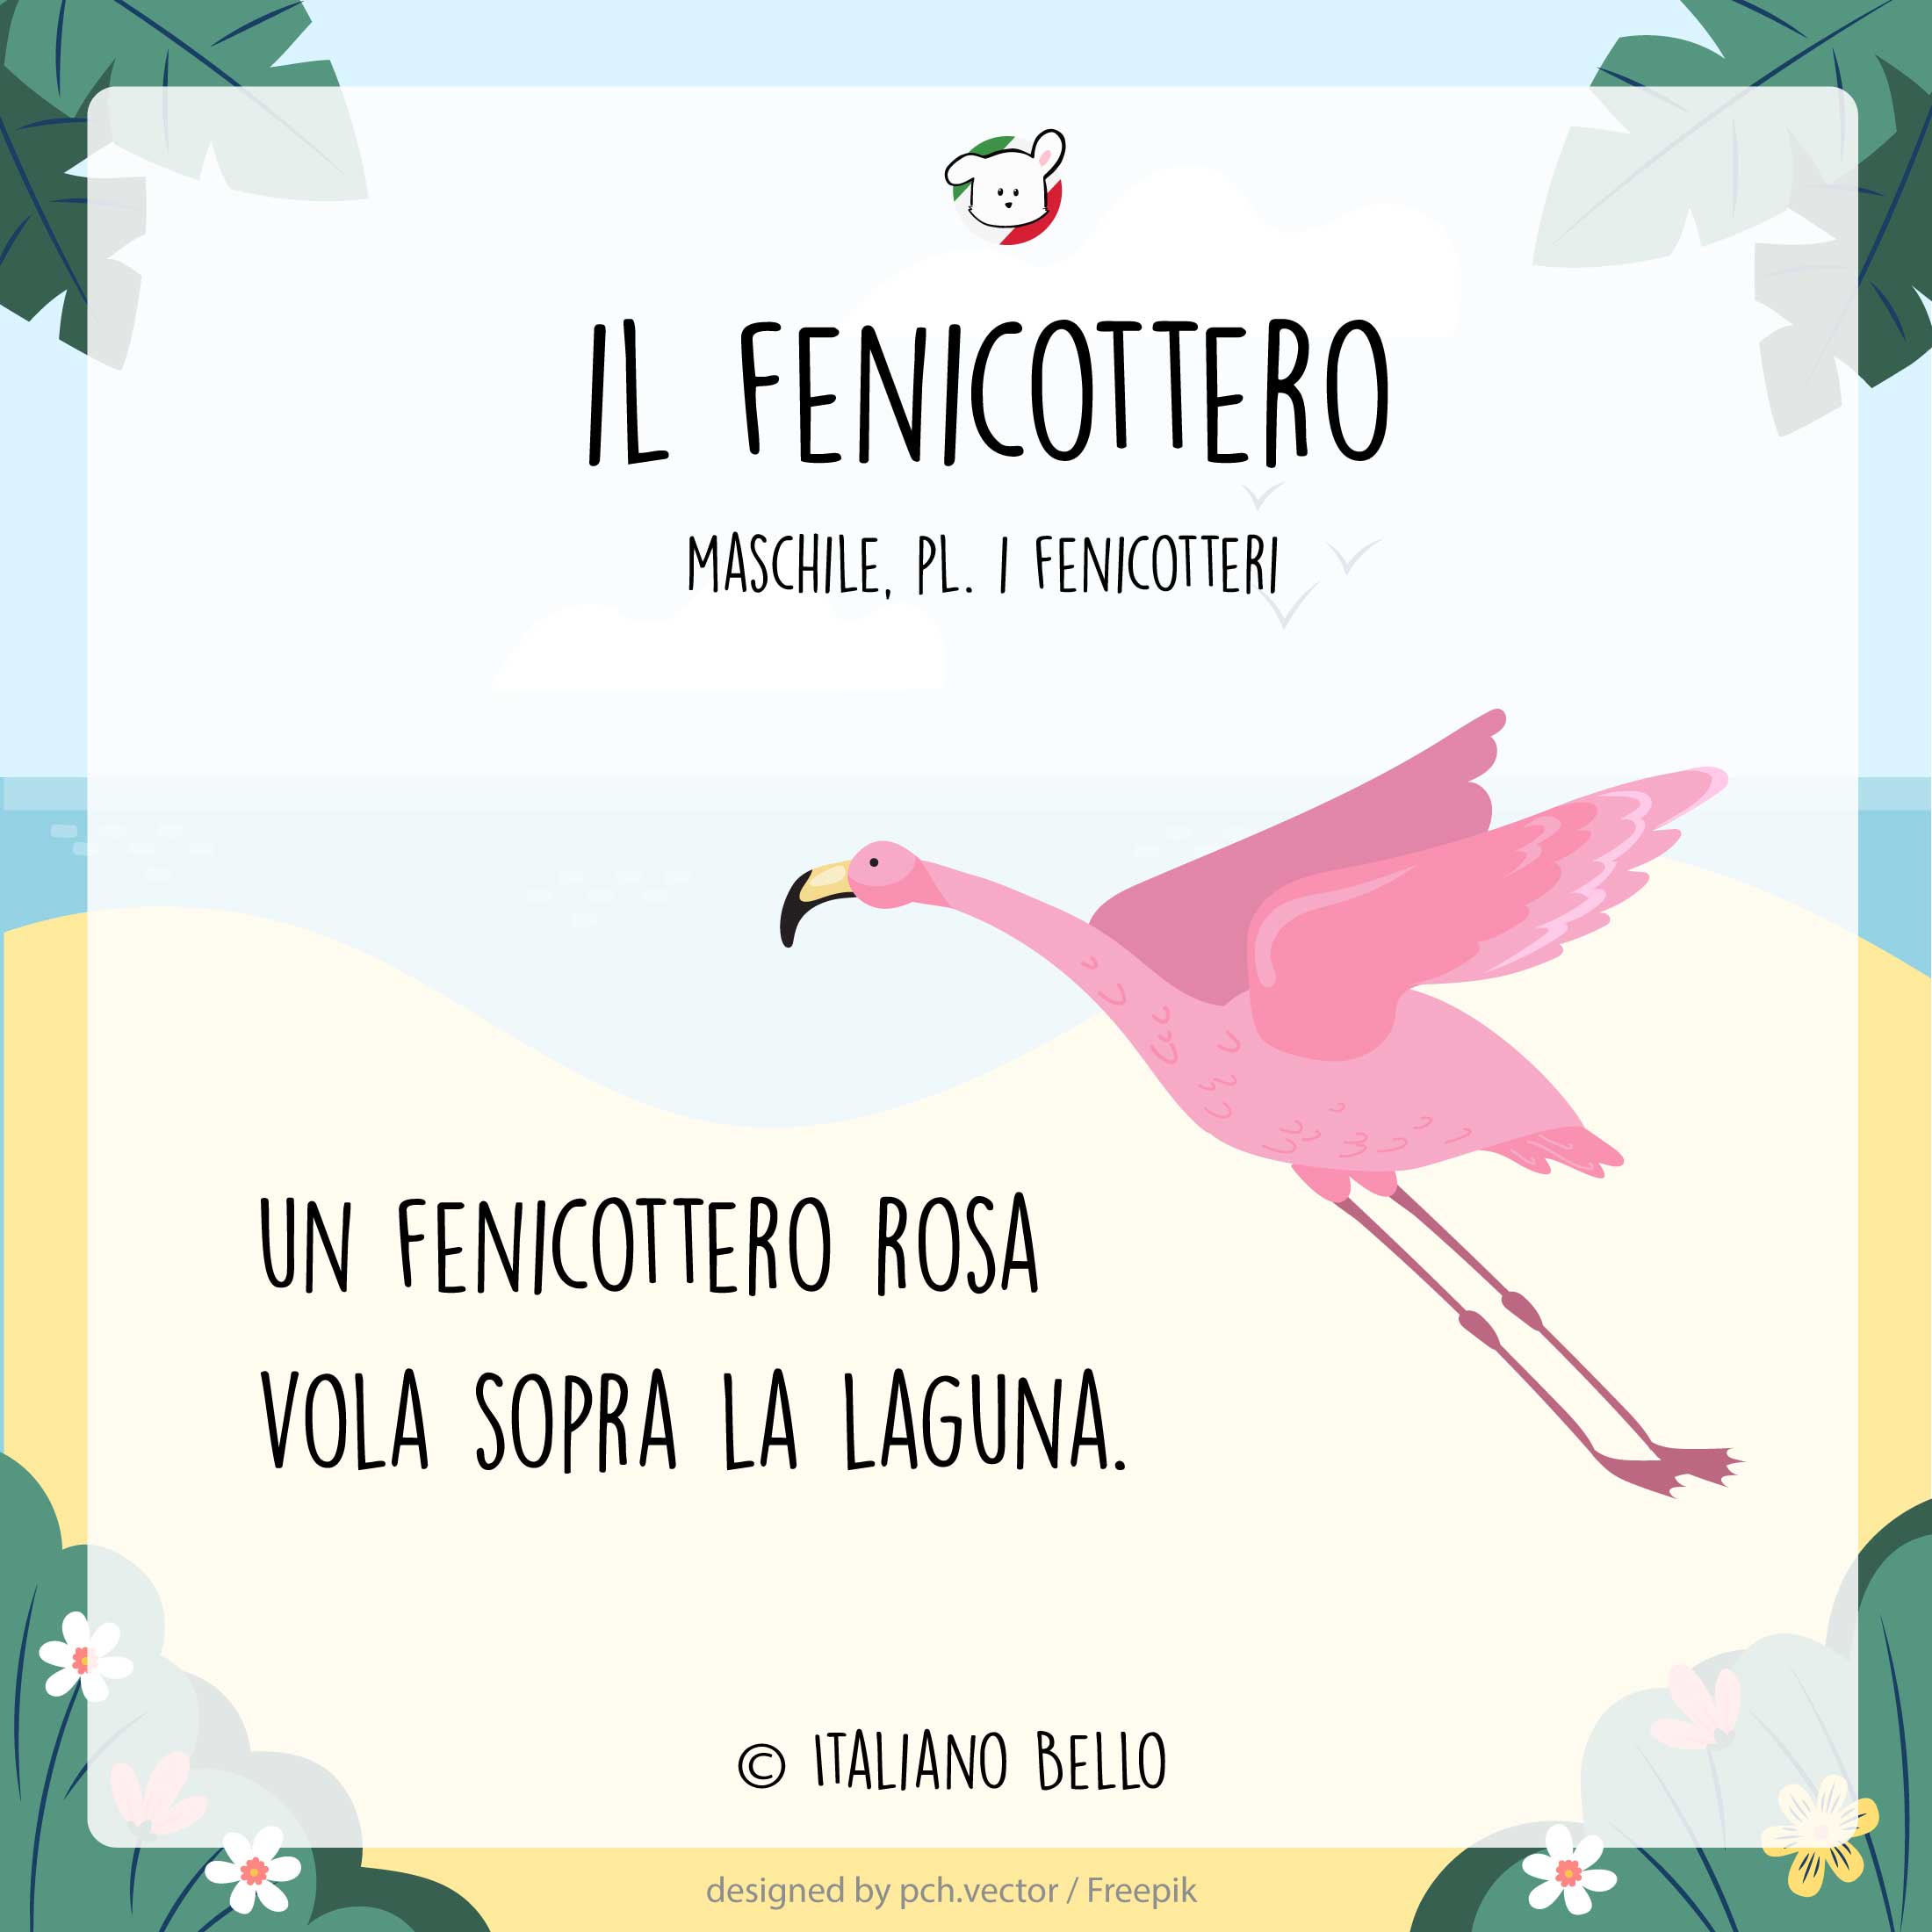 estate vocabolario fenicottero | Bildwörterbuch Italienisch